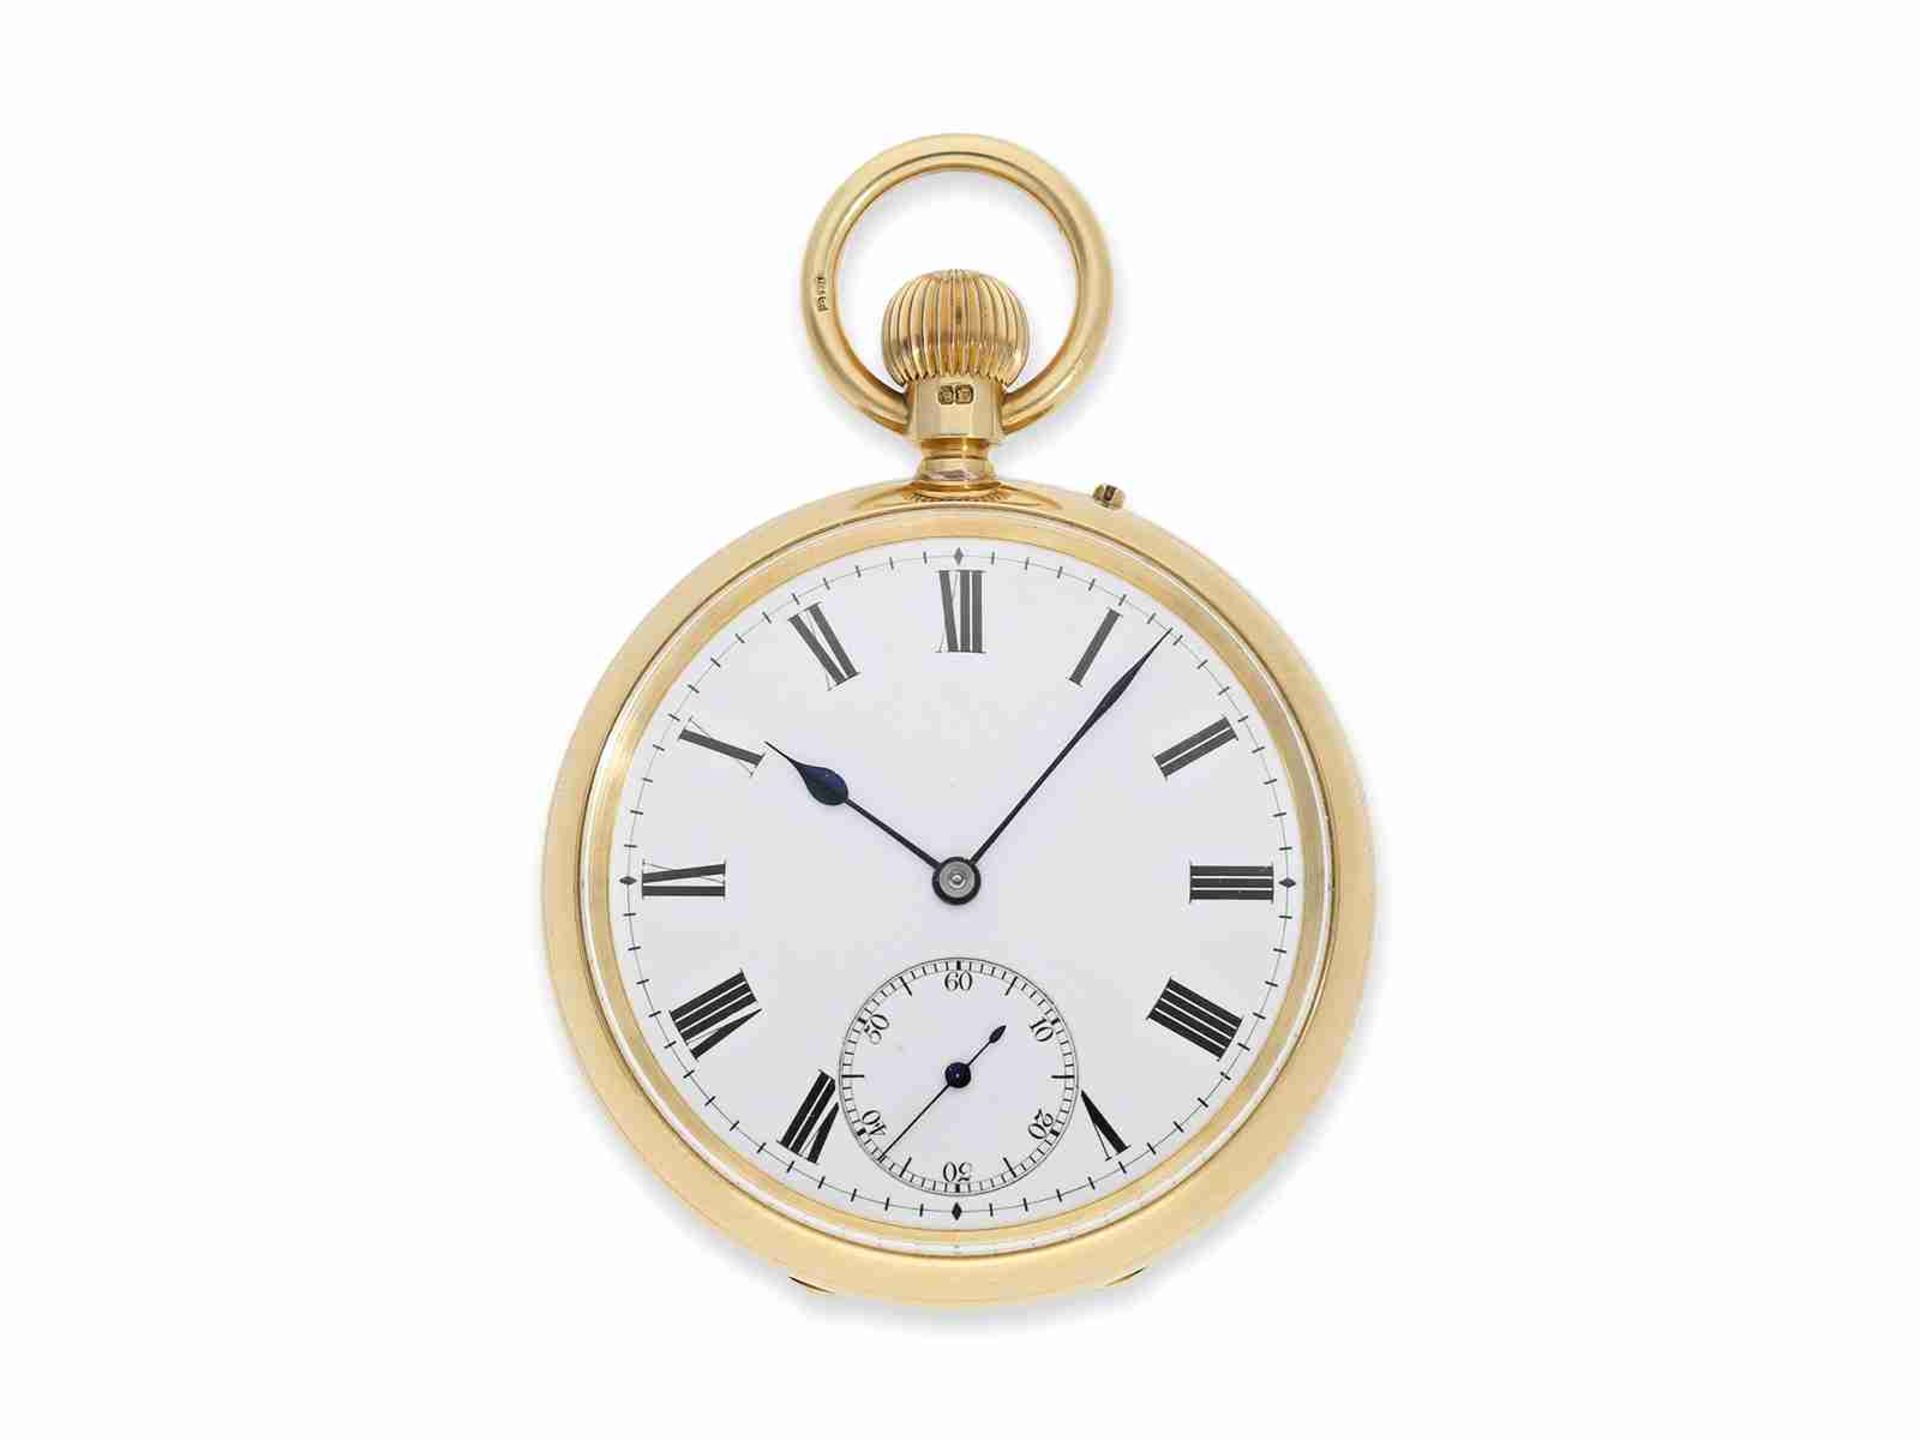 Taschenuhr: exquisite englische Präzisionstaschenuhr, Chronometermacher der Admiralität Usher & Cole